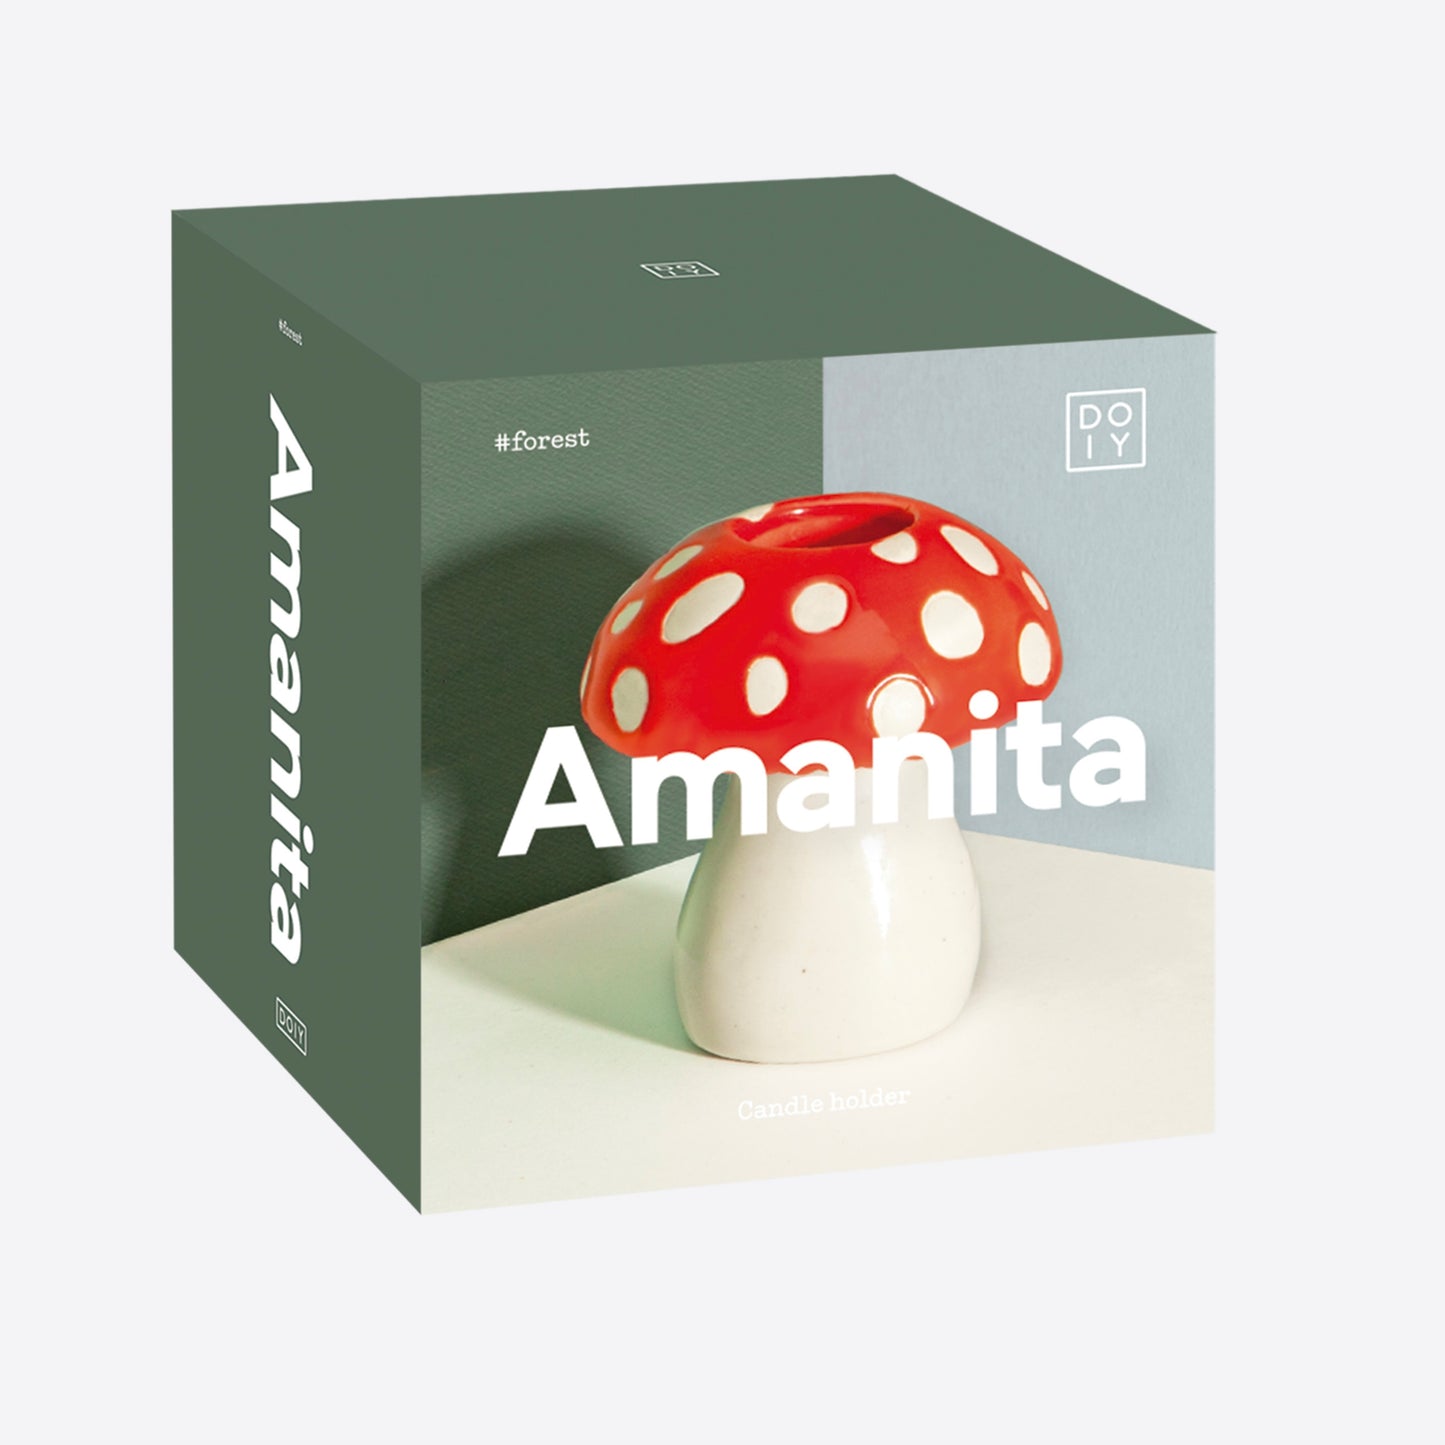 Kandelaar Mushroom Amanita - Doiy